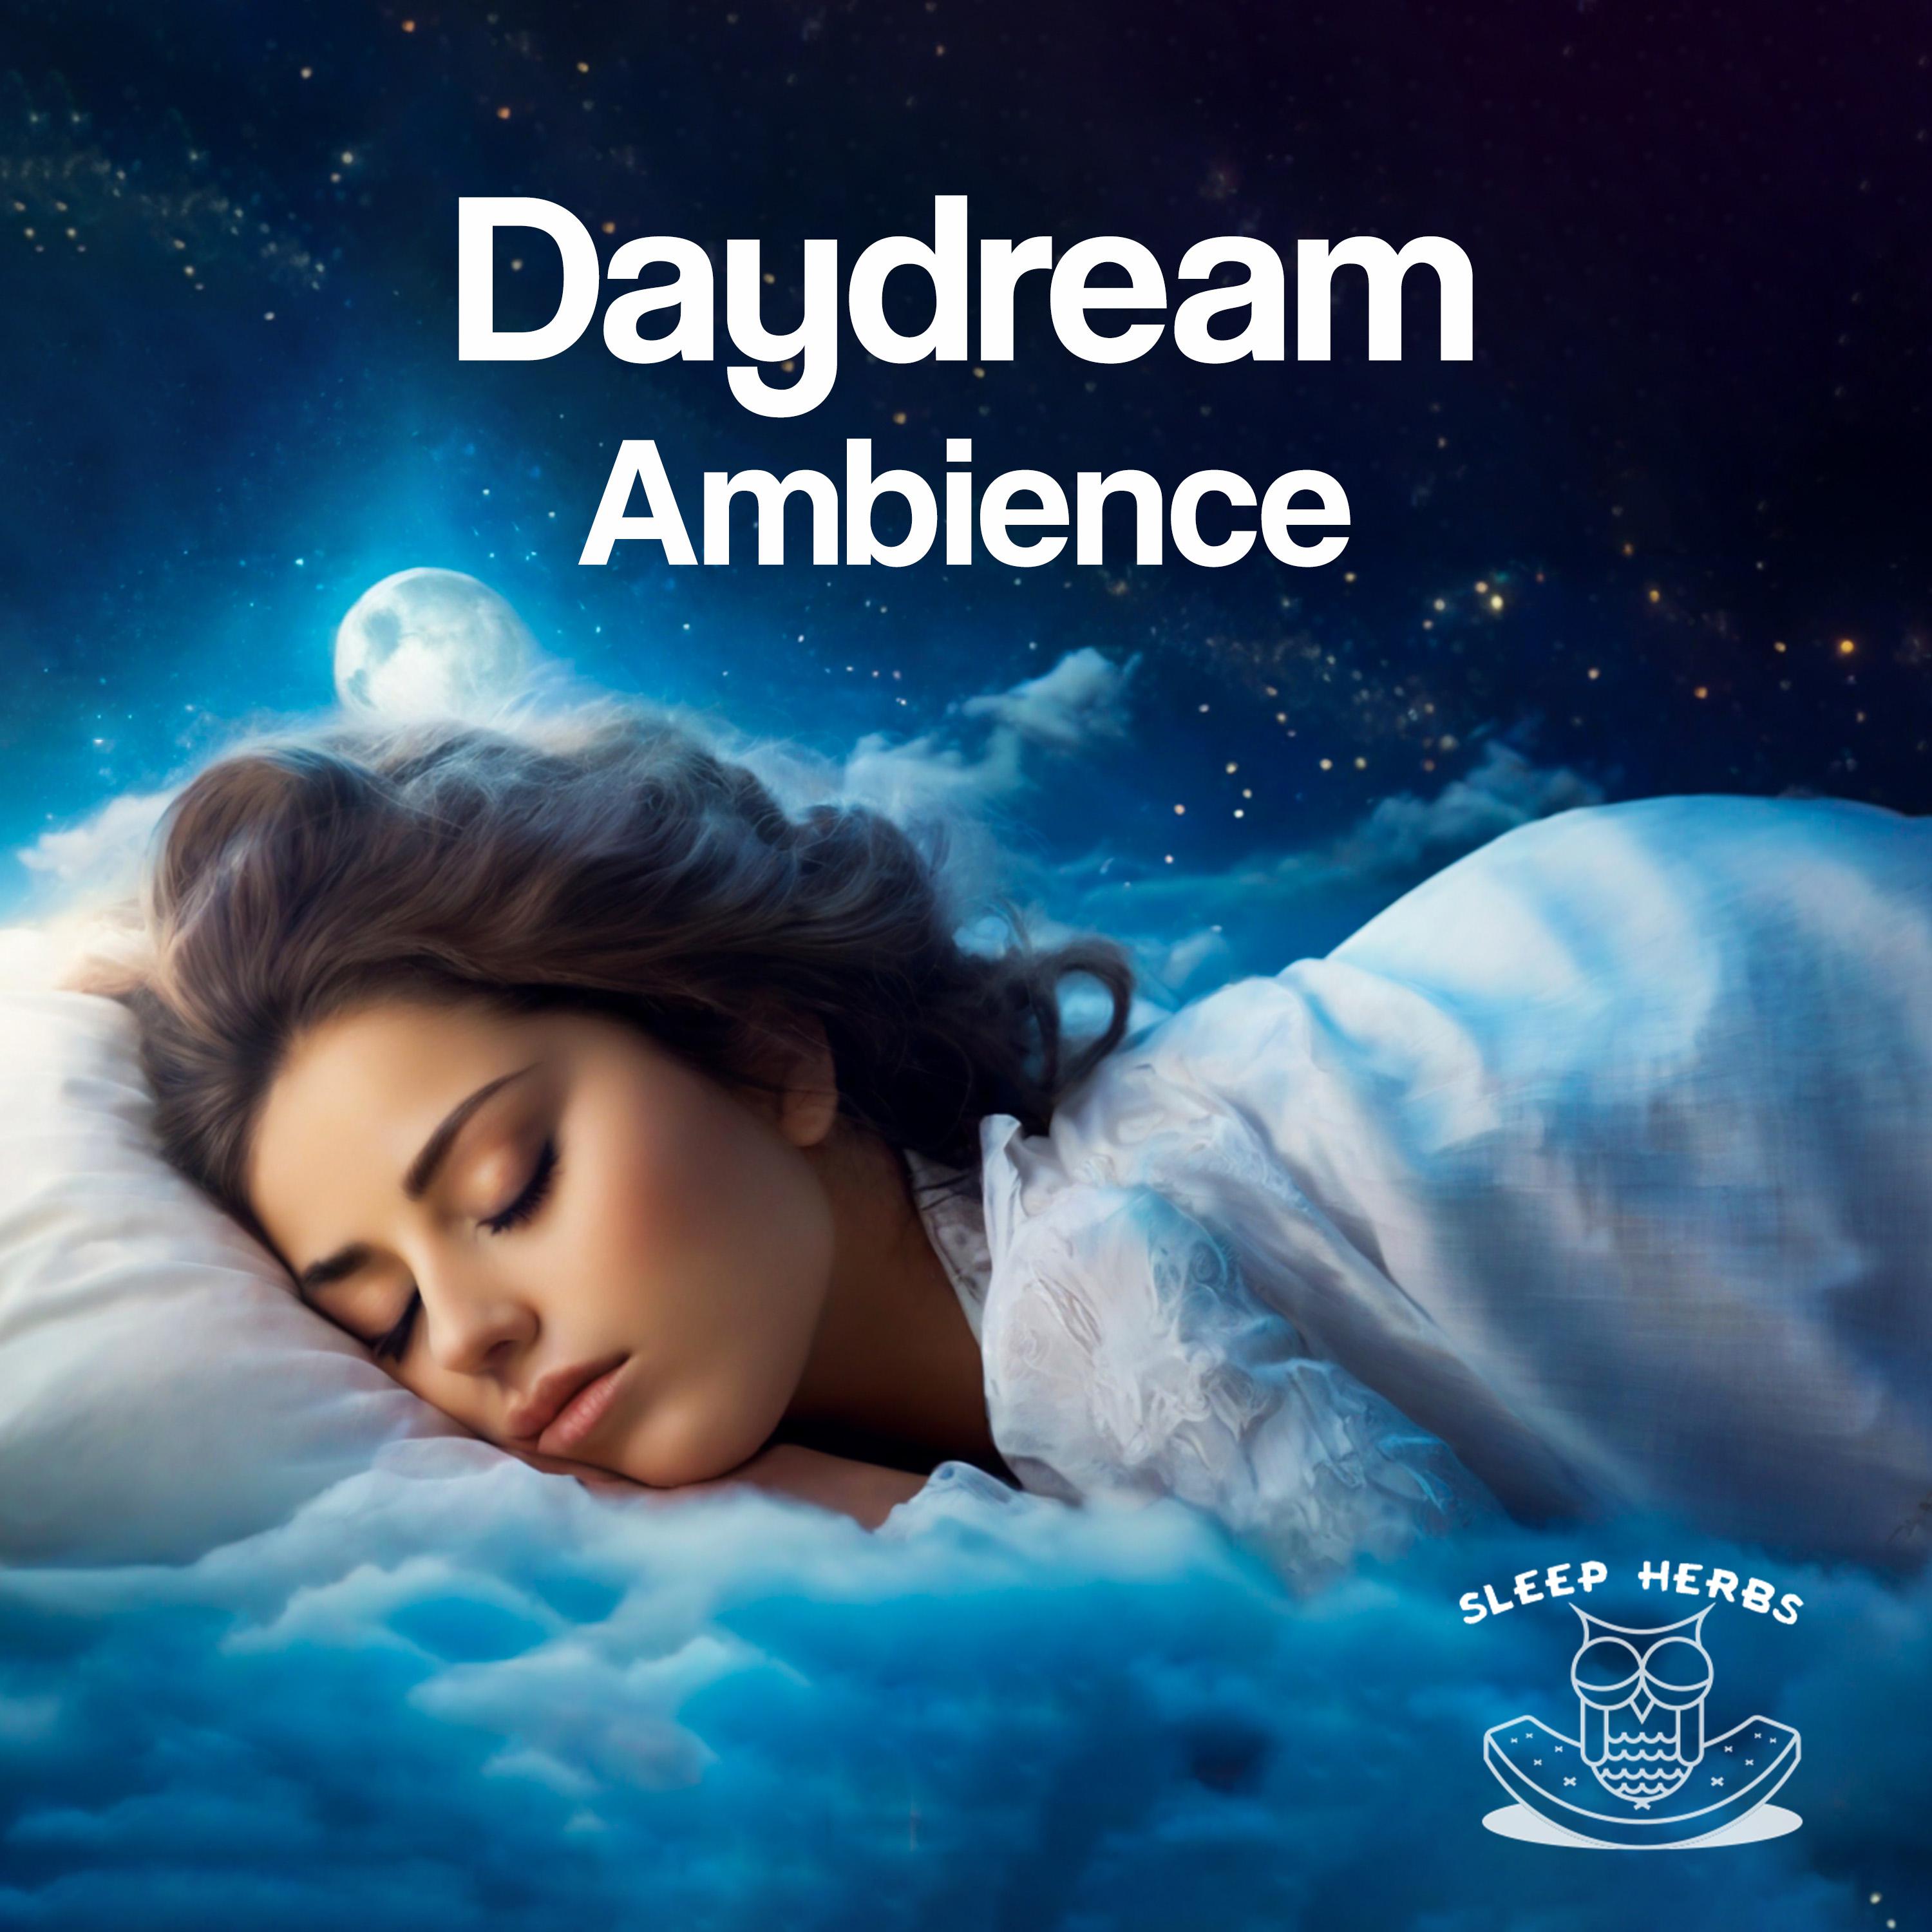 Sleep Herbs - Digital Daydream